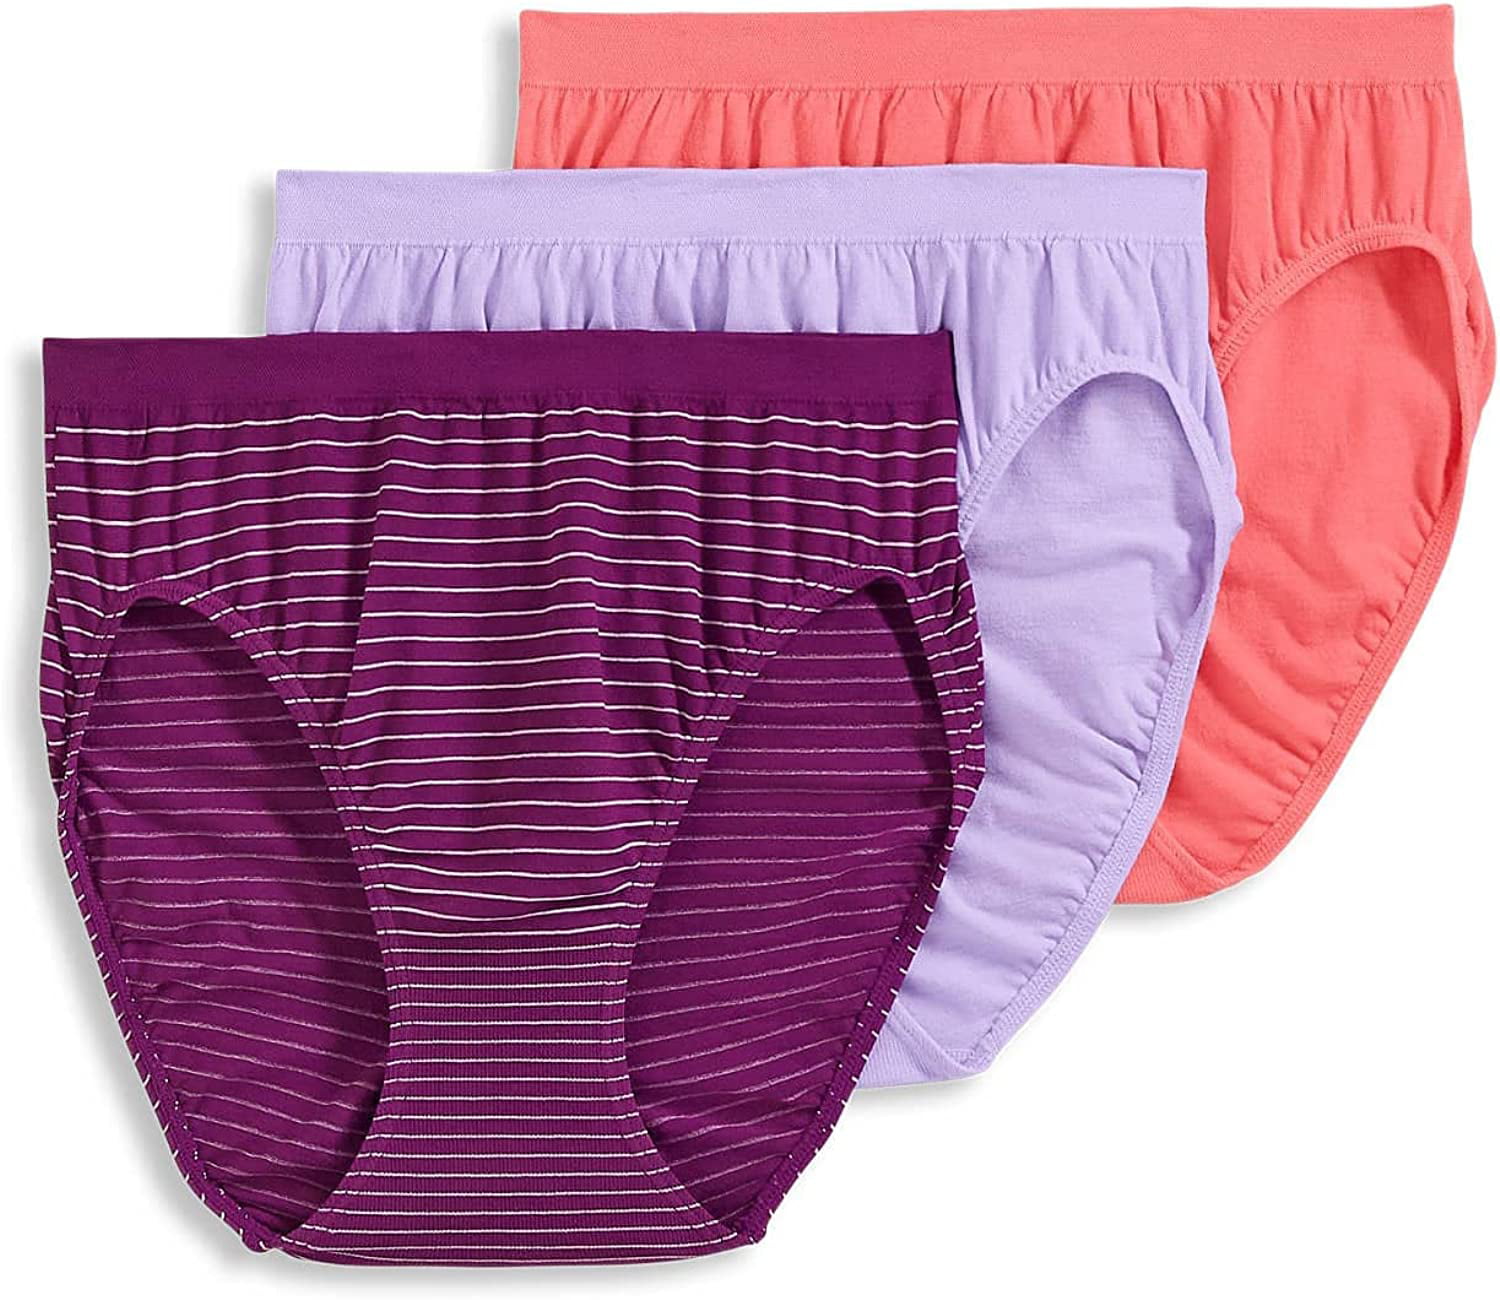 Jockey Women's Underwear Comfies Microfiber French Cut - 3 Pack ...